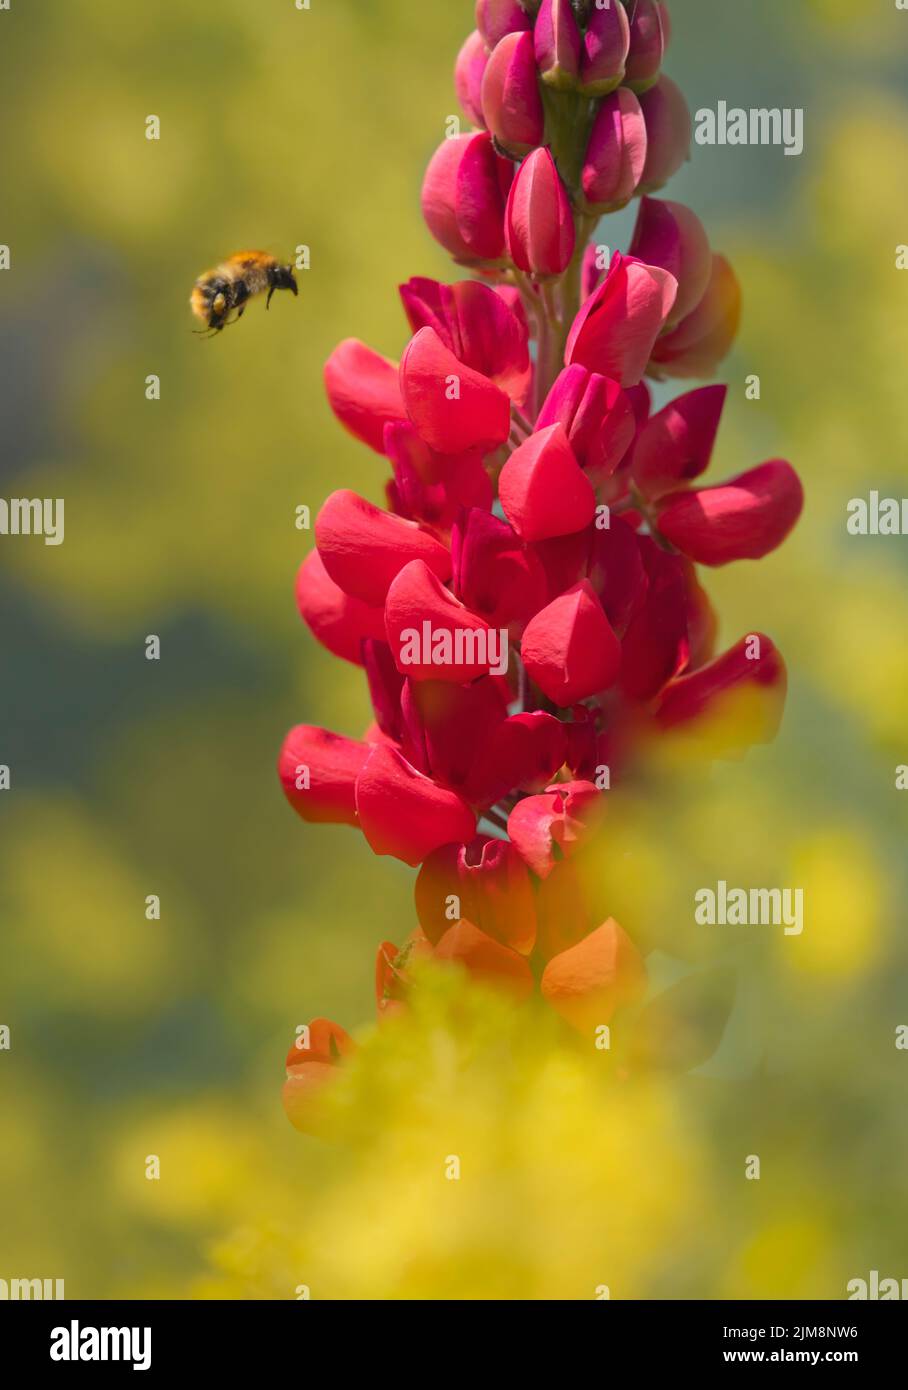 Una abeja de miel en vuelo cuando se acerca a una flor de Lupin rojo brillante que está rodeada por flores amarillas fuera de foco Foto de stock